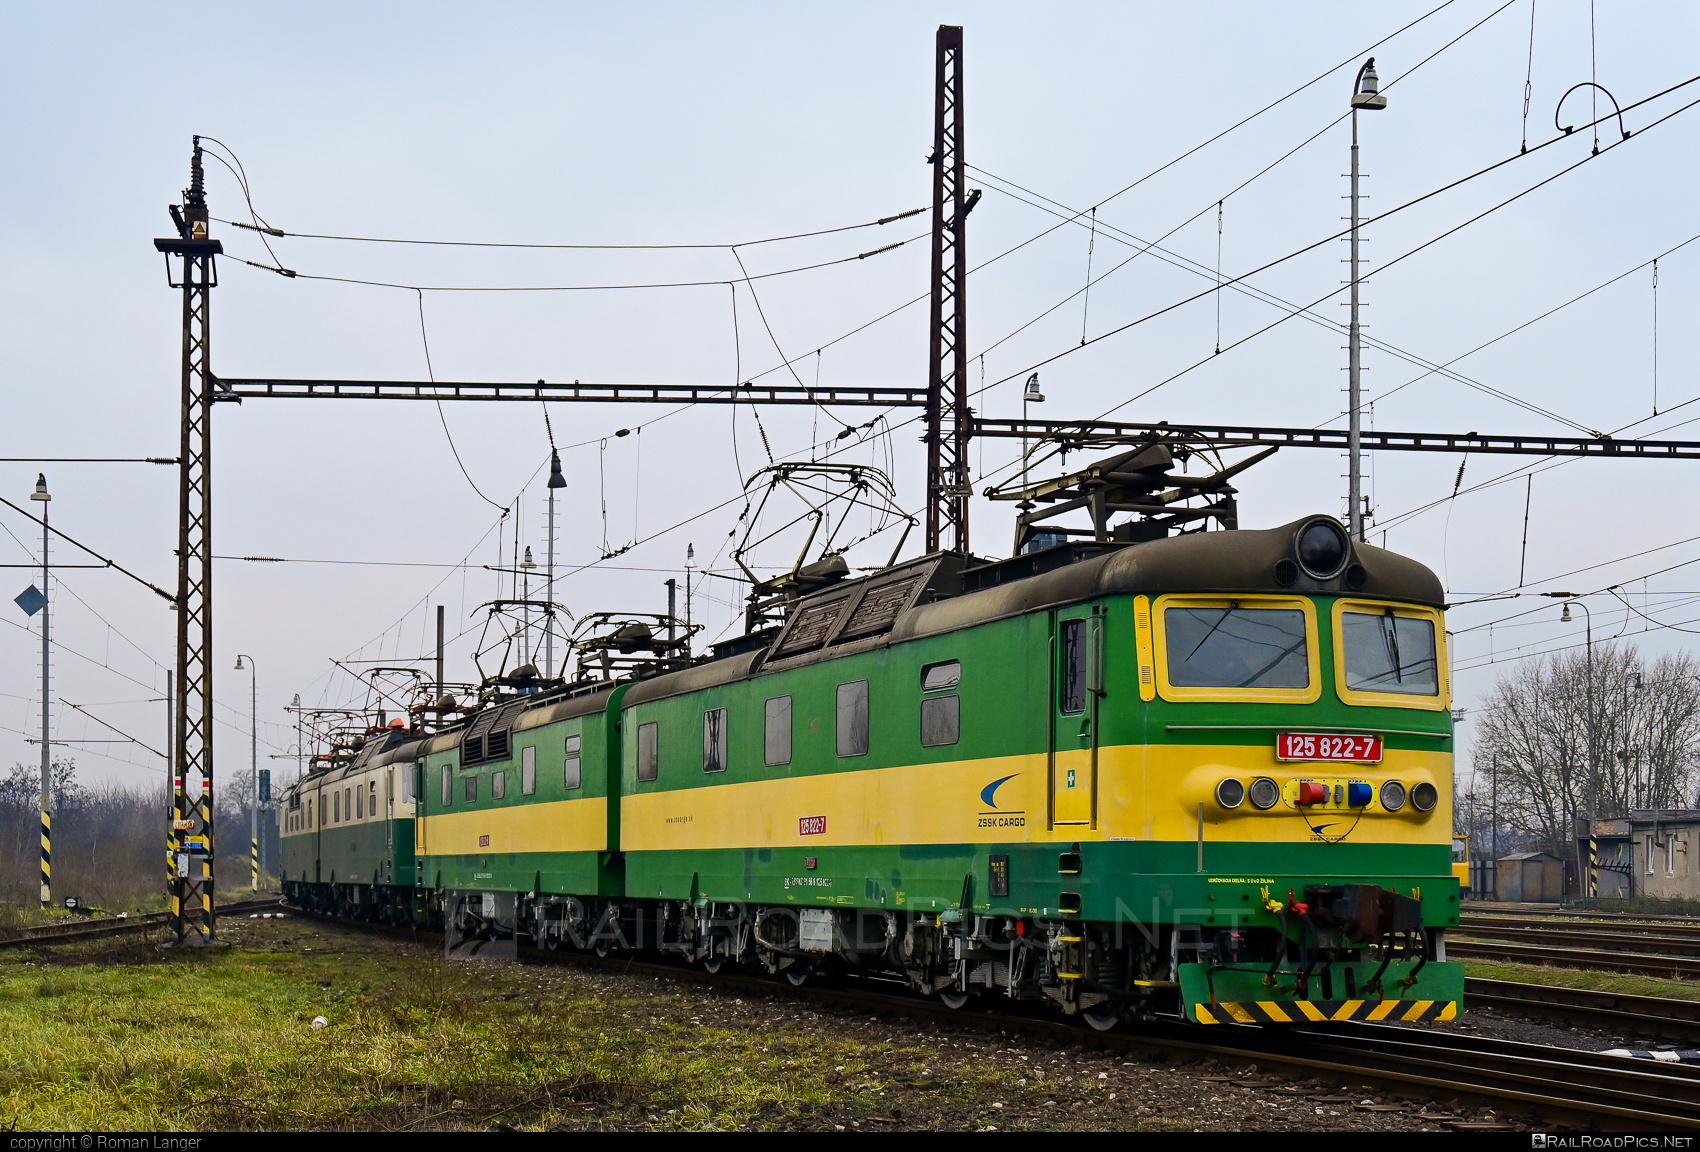 Škoda 67E - 125 822-7 operated by Železničná Spoločnost' Cargo Slovakia a.s. #CSDe4695 #ZeleznicnaSpolocnostCargoSlovakia #locomotive1258 #skoda #skoda67e #staredvojca #staredvojce #zsskcargo